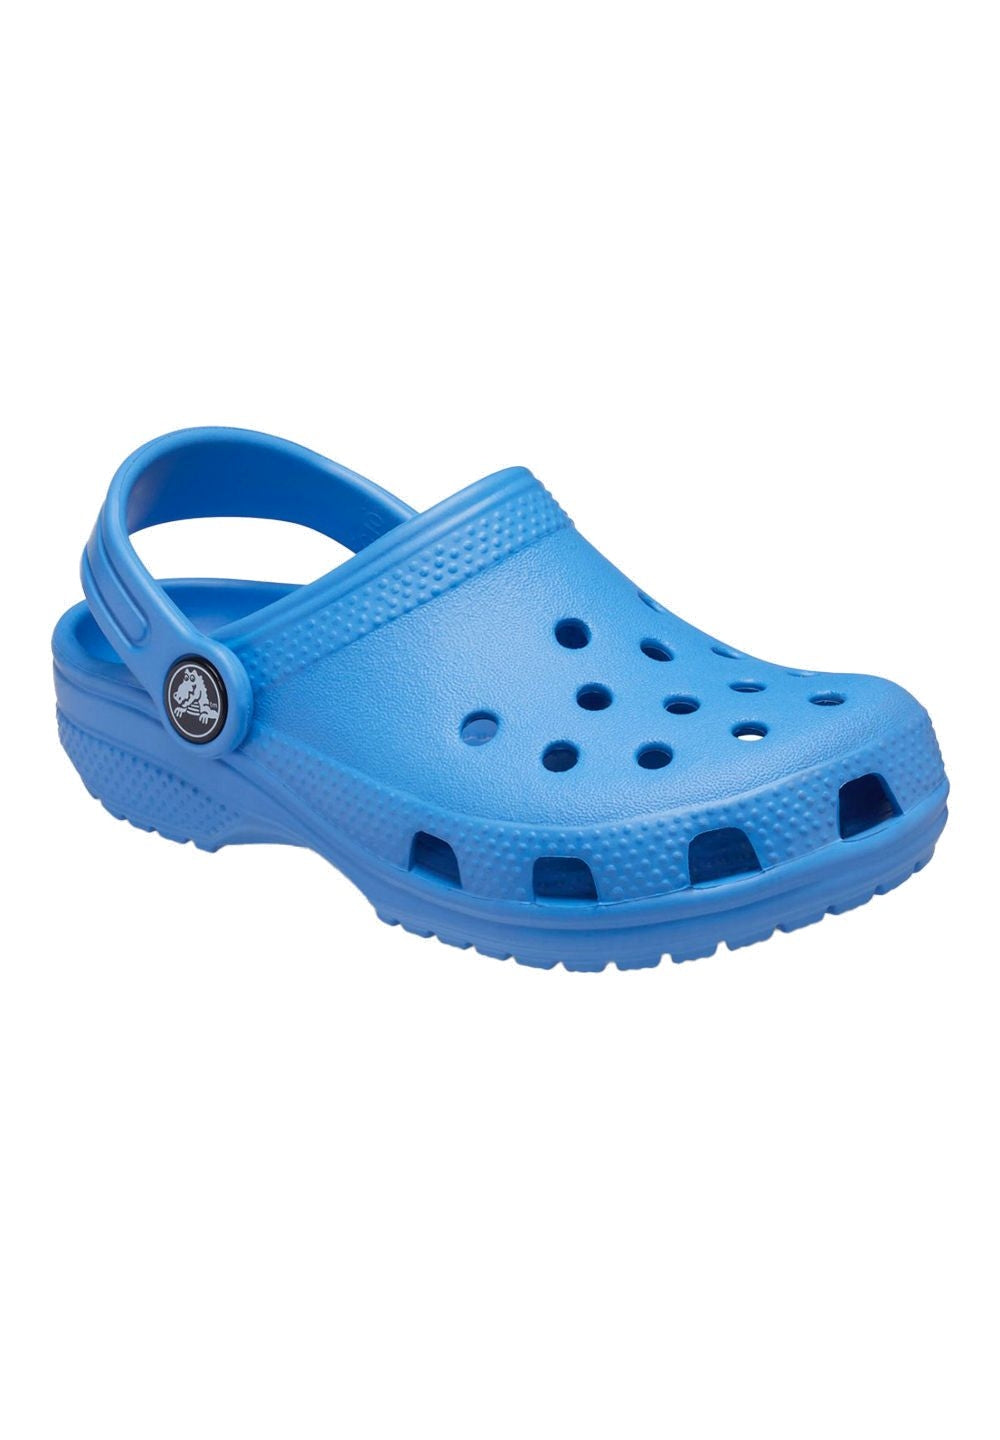 Sandalo blu per bambino - Primamoda kids